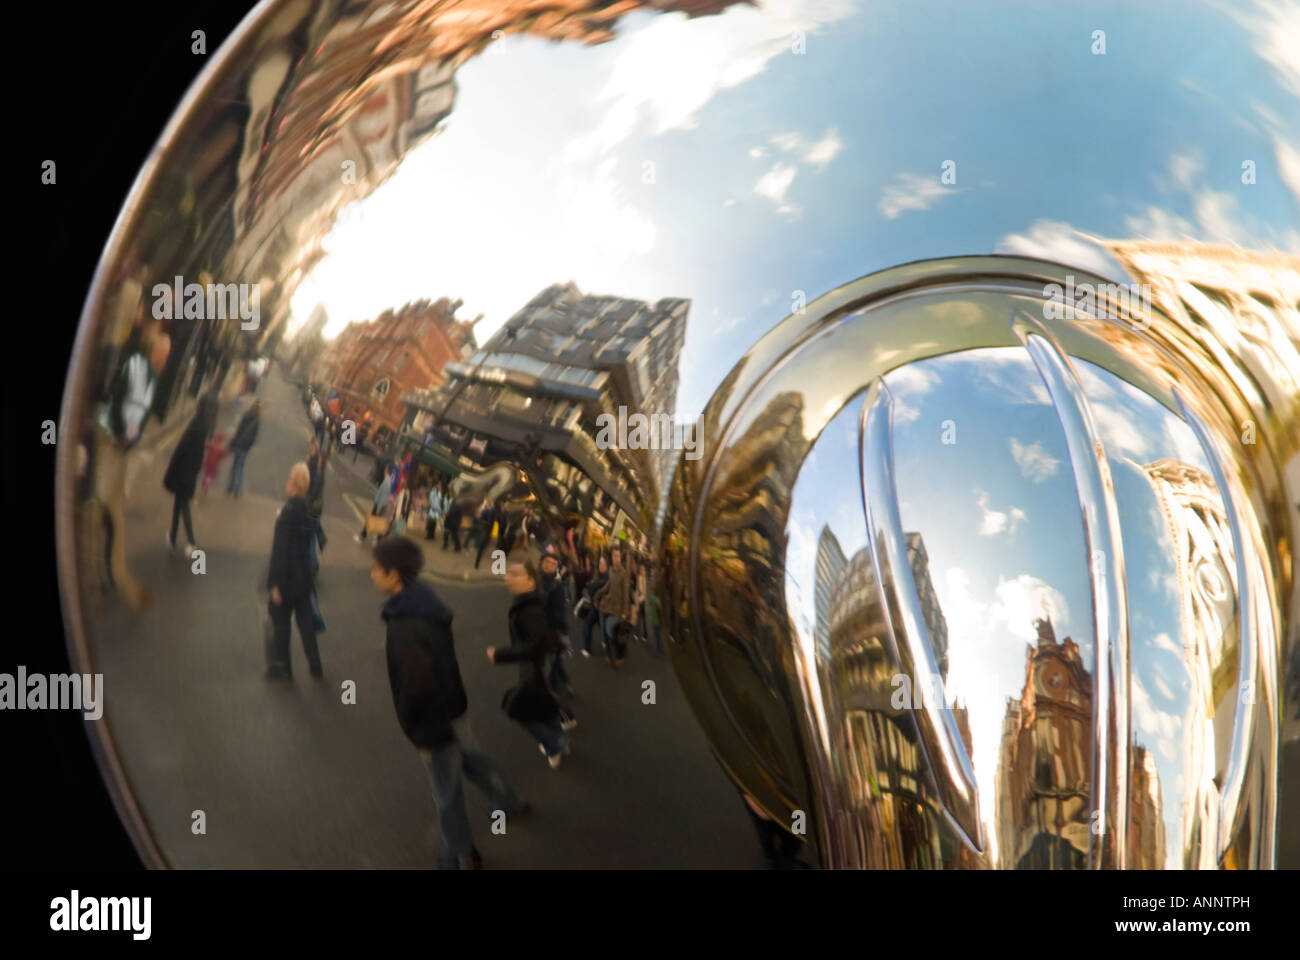 Chiudere orizzontale di riflessioni a campana di un enorme sousaphone aka marching tuba, che viene riprodotto in una banda di ottoni. Foto Stock